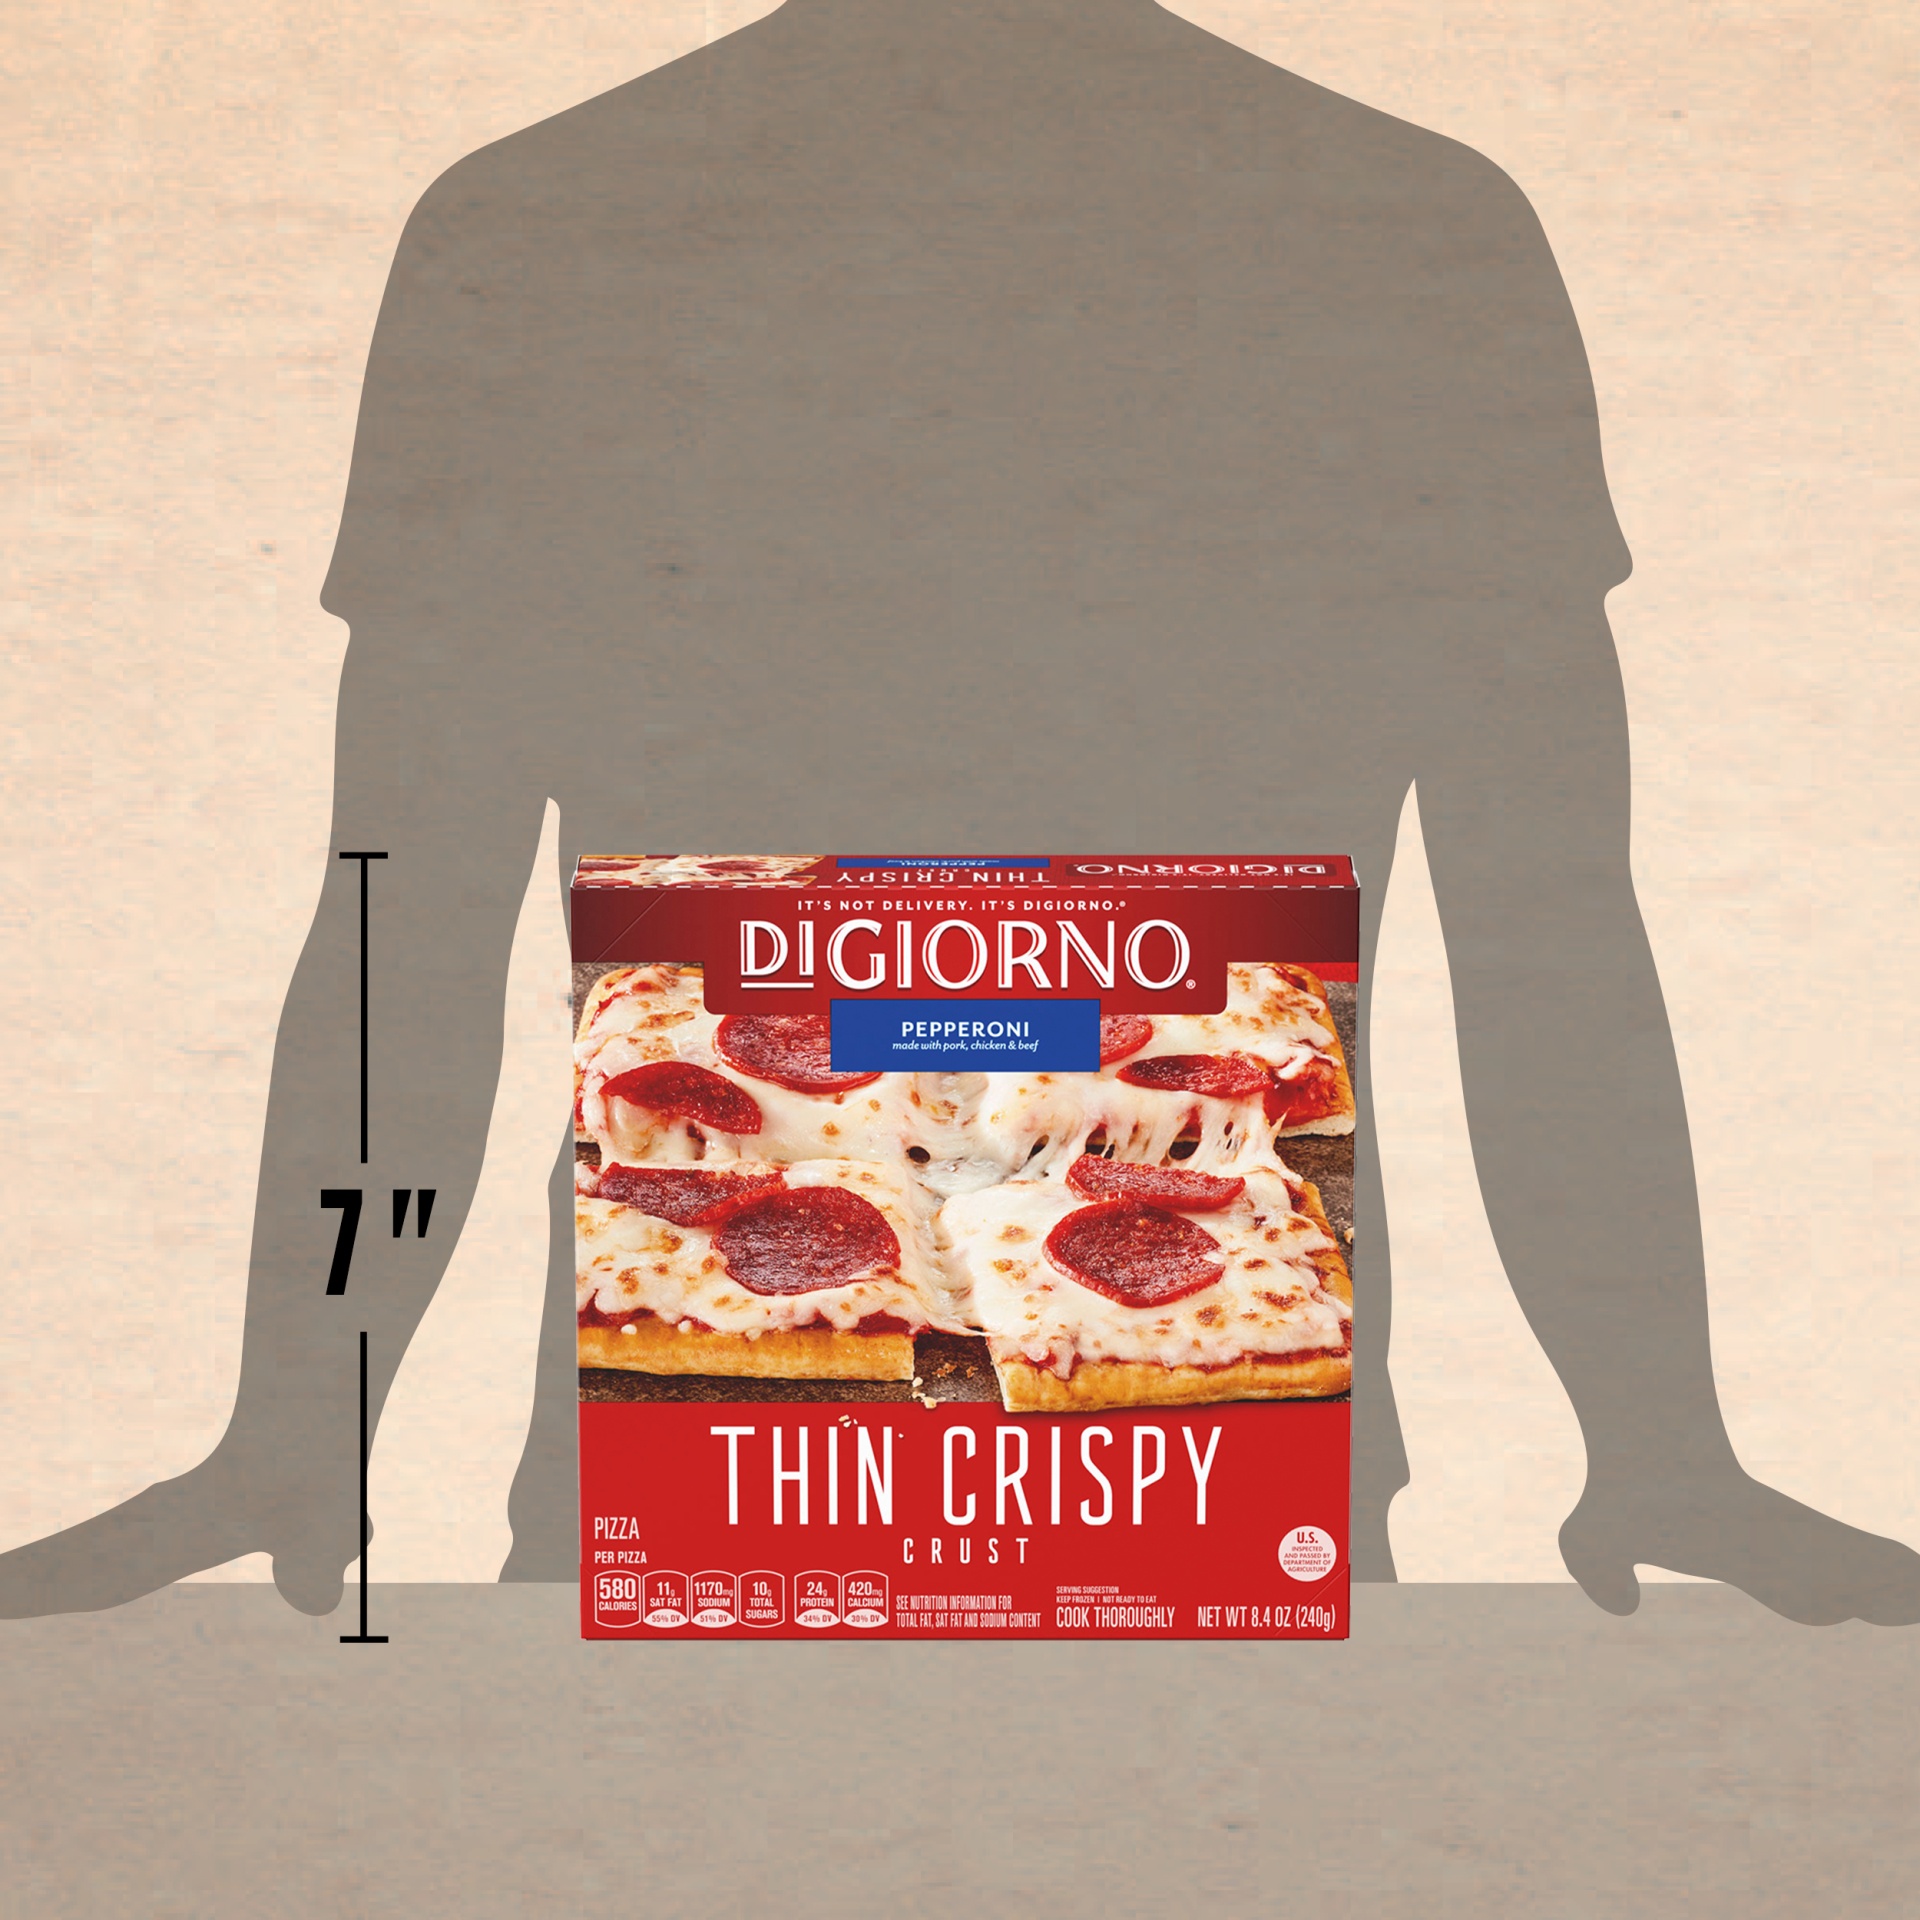 slide 4 of 6, DIGIORNO Frozen Pepperoni Personal Pizza on a Thin Crispy Crust, 14 oz